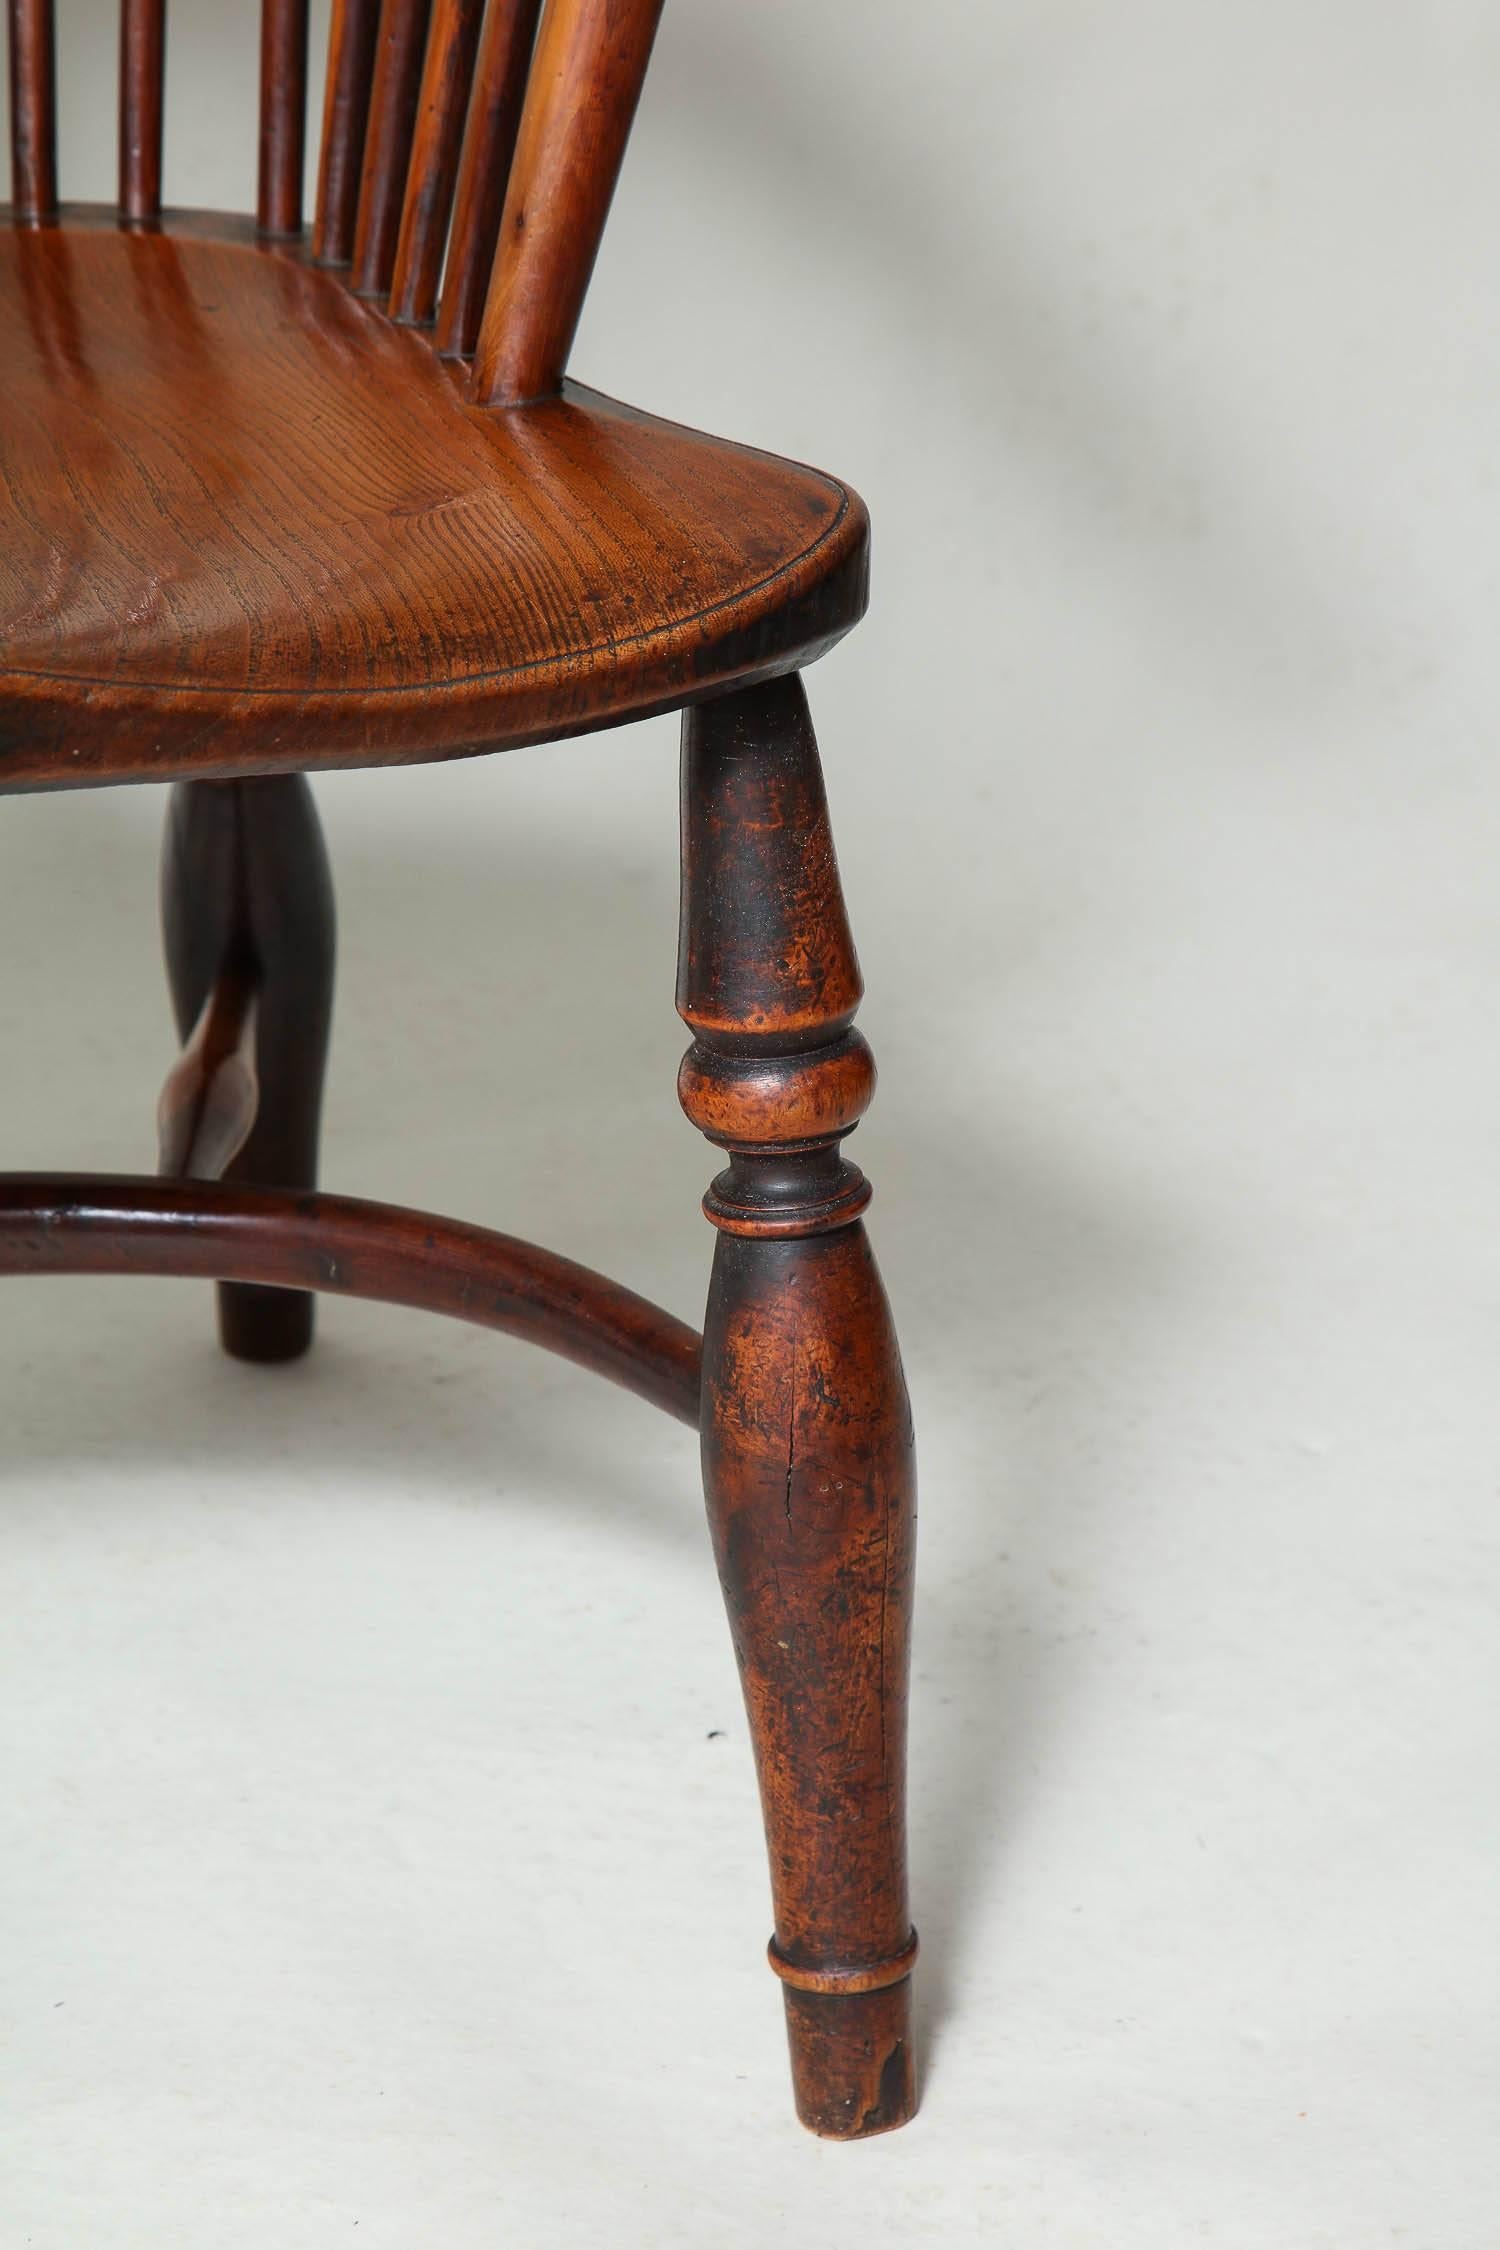 Très beau fauteuil à dossier arrondi en bois d'if anglais du début du 19e siècle, l'assise a été percée et décorée de plumes d'autruche 